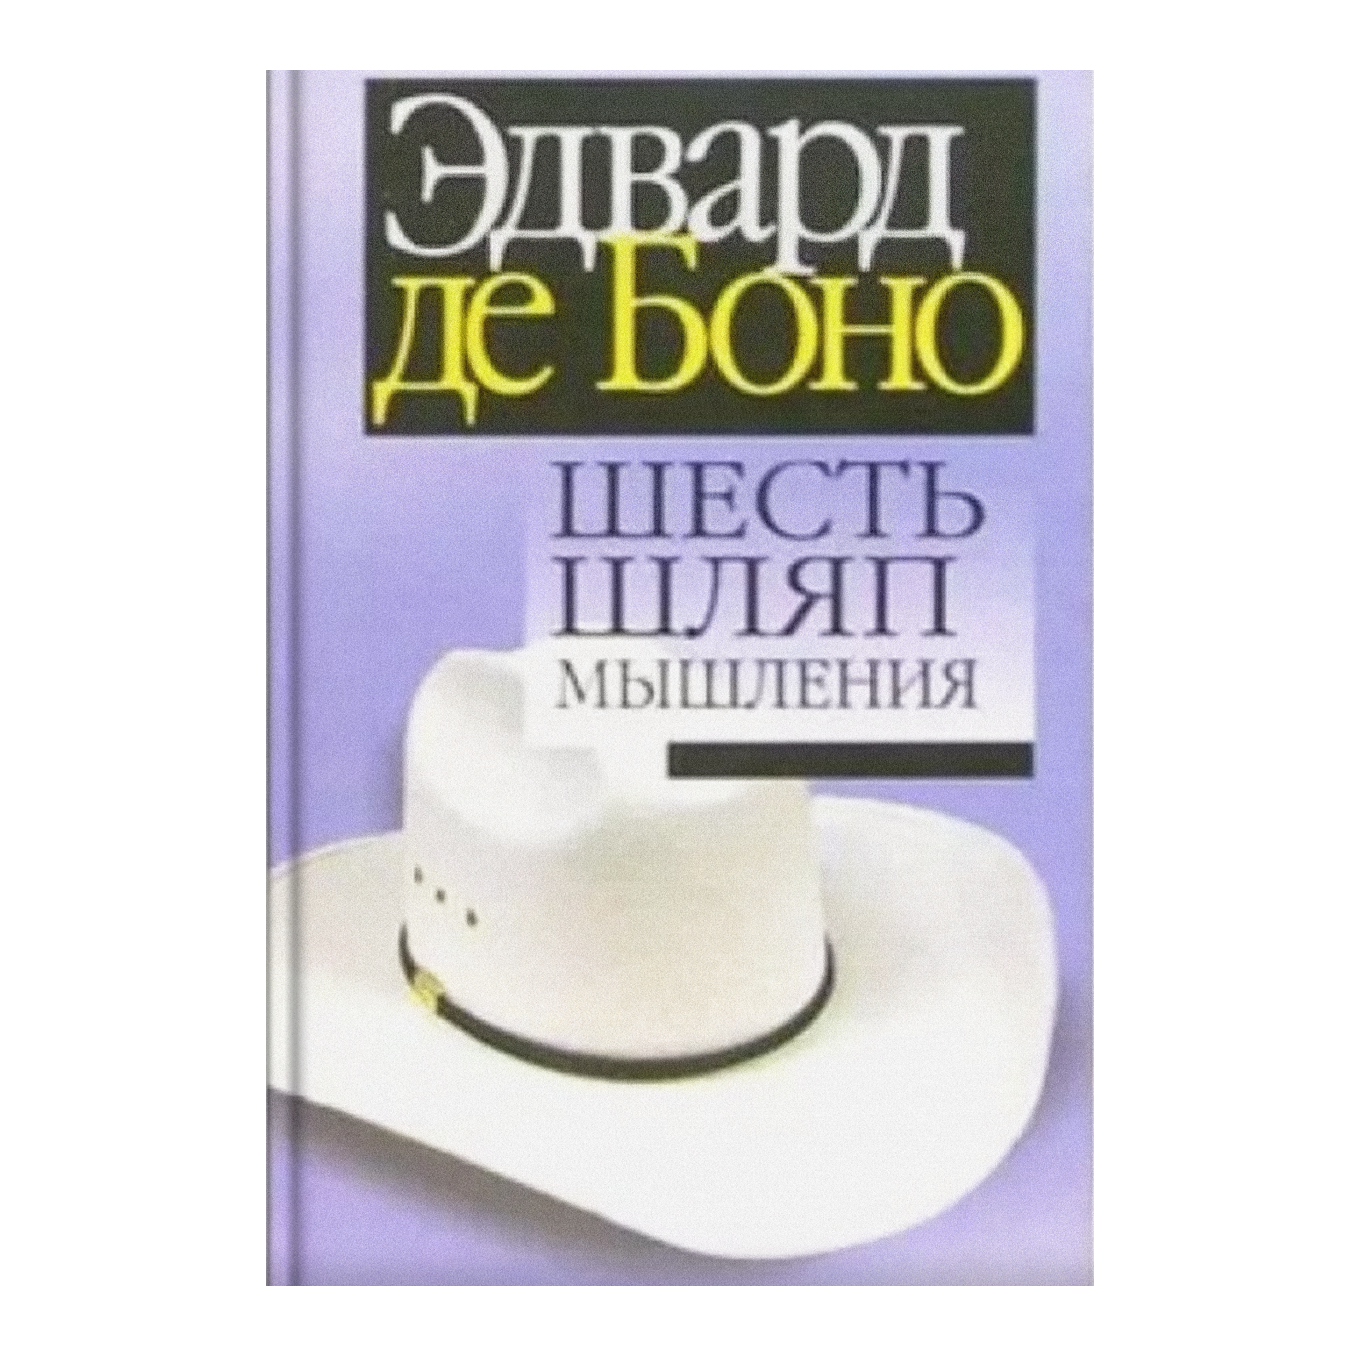 Шесть шляп мышления Эдварда де Боно